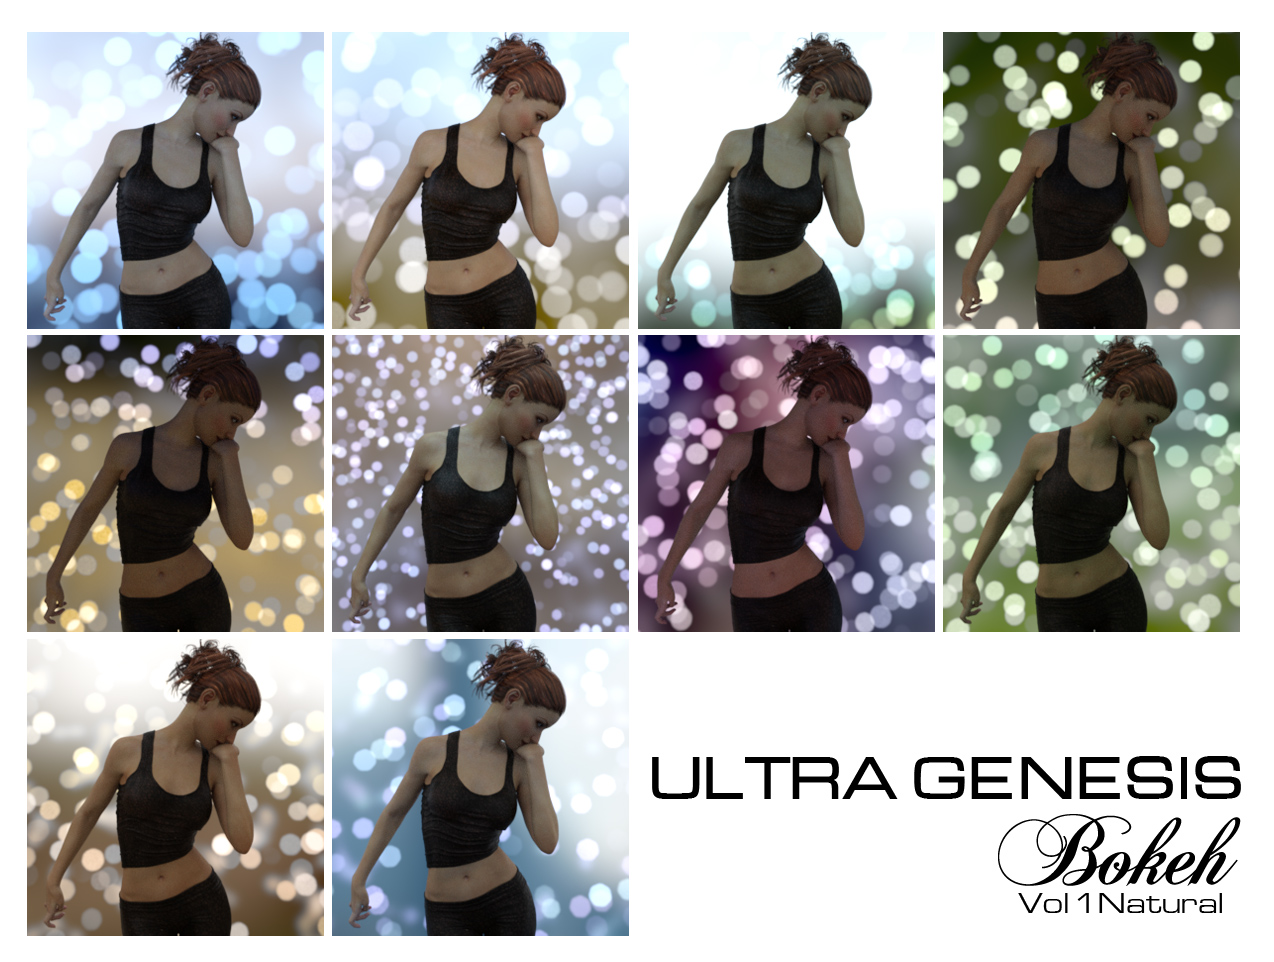 Ultra Genesis Bokeh Vol 1 - Natural by: TravelerRuntimeDNASyyd, 3D Models by Daz 3D